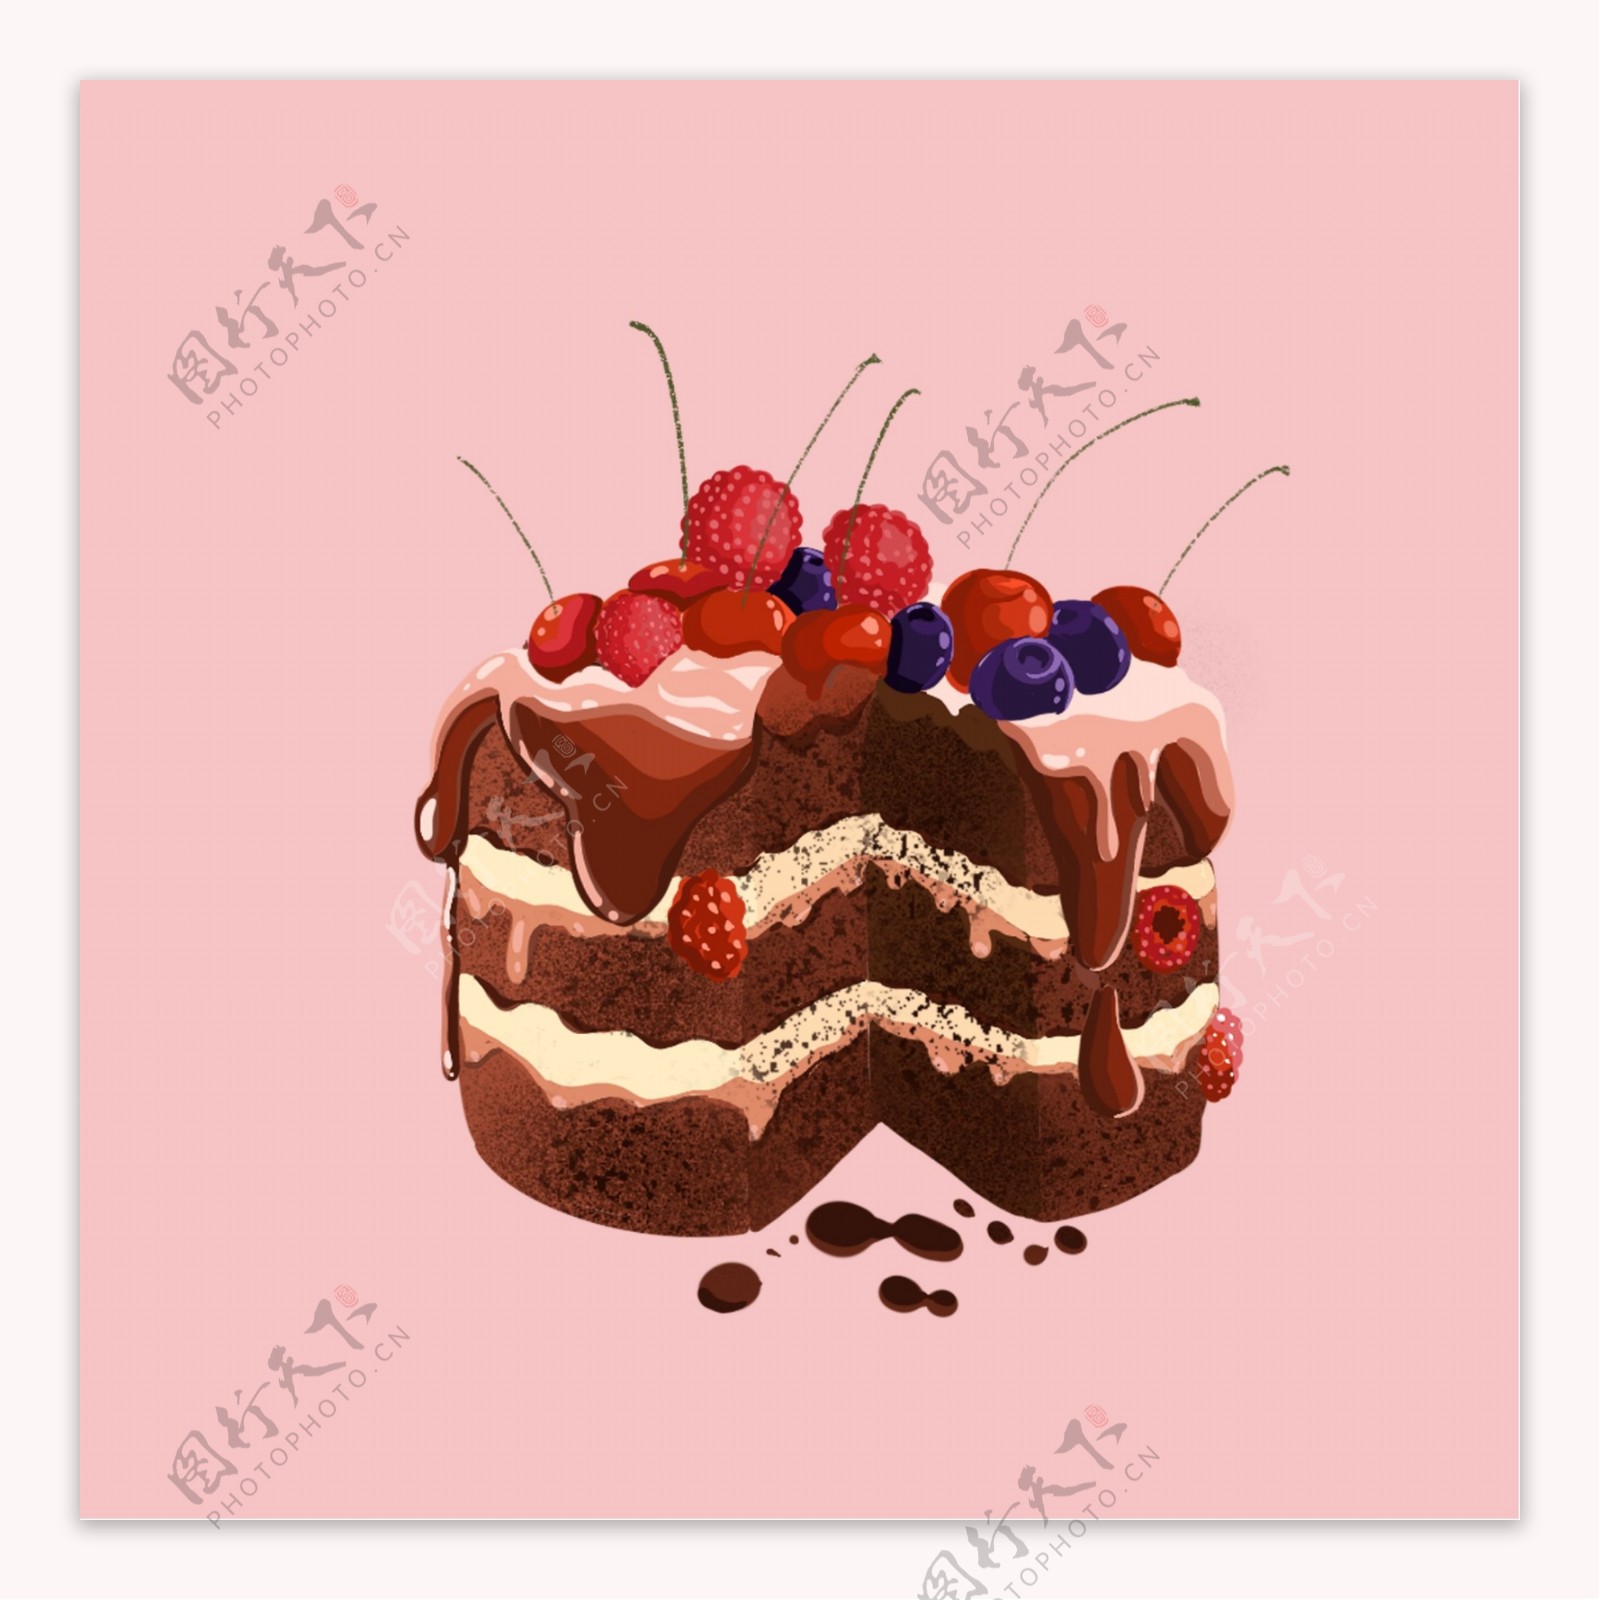 樱桃蓝莓奶油巧克力蛋糕